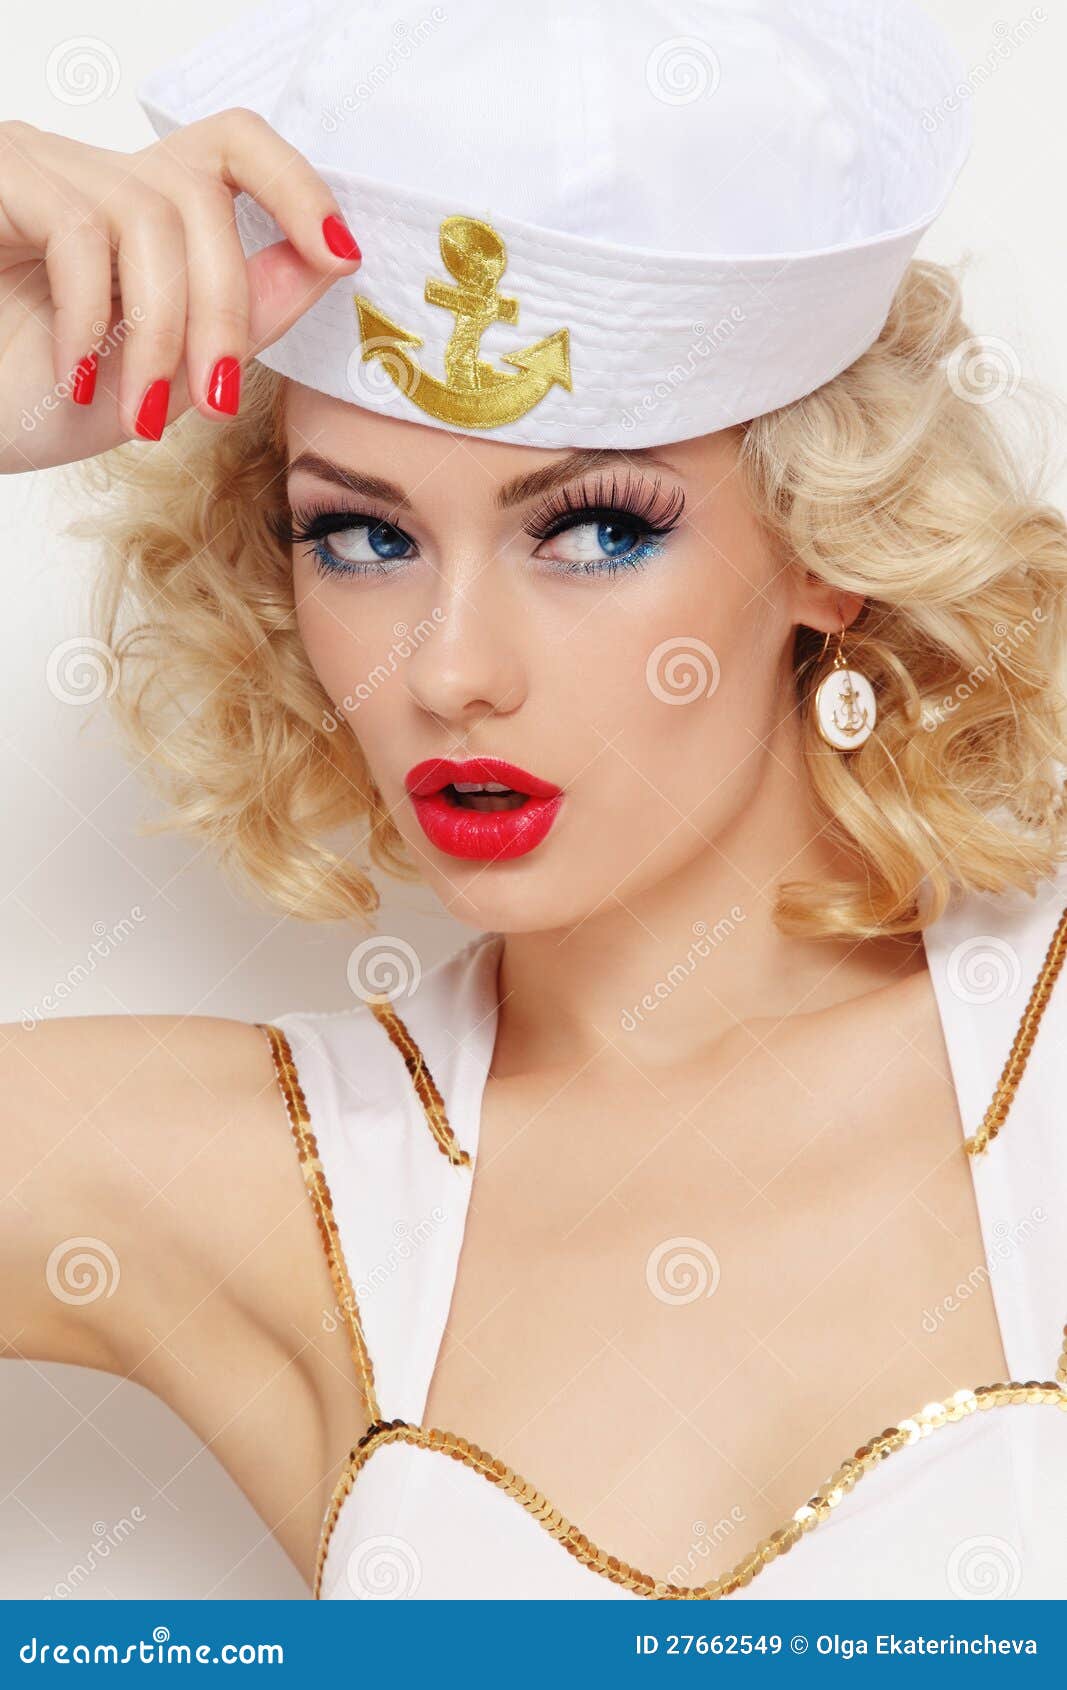 blonde sailor